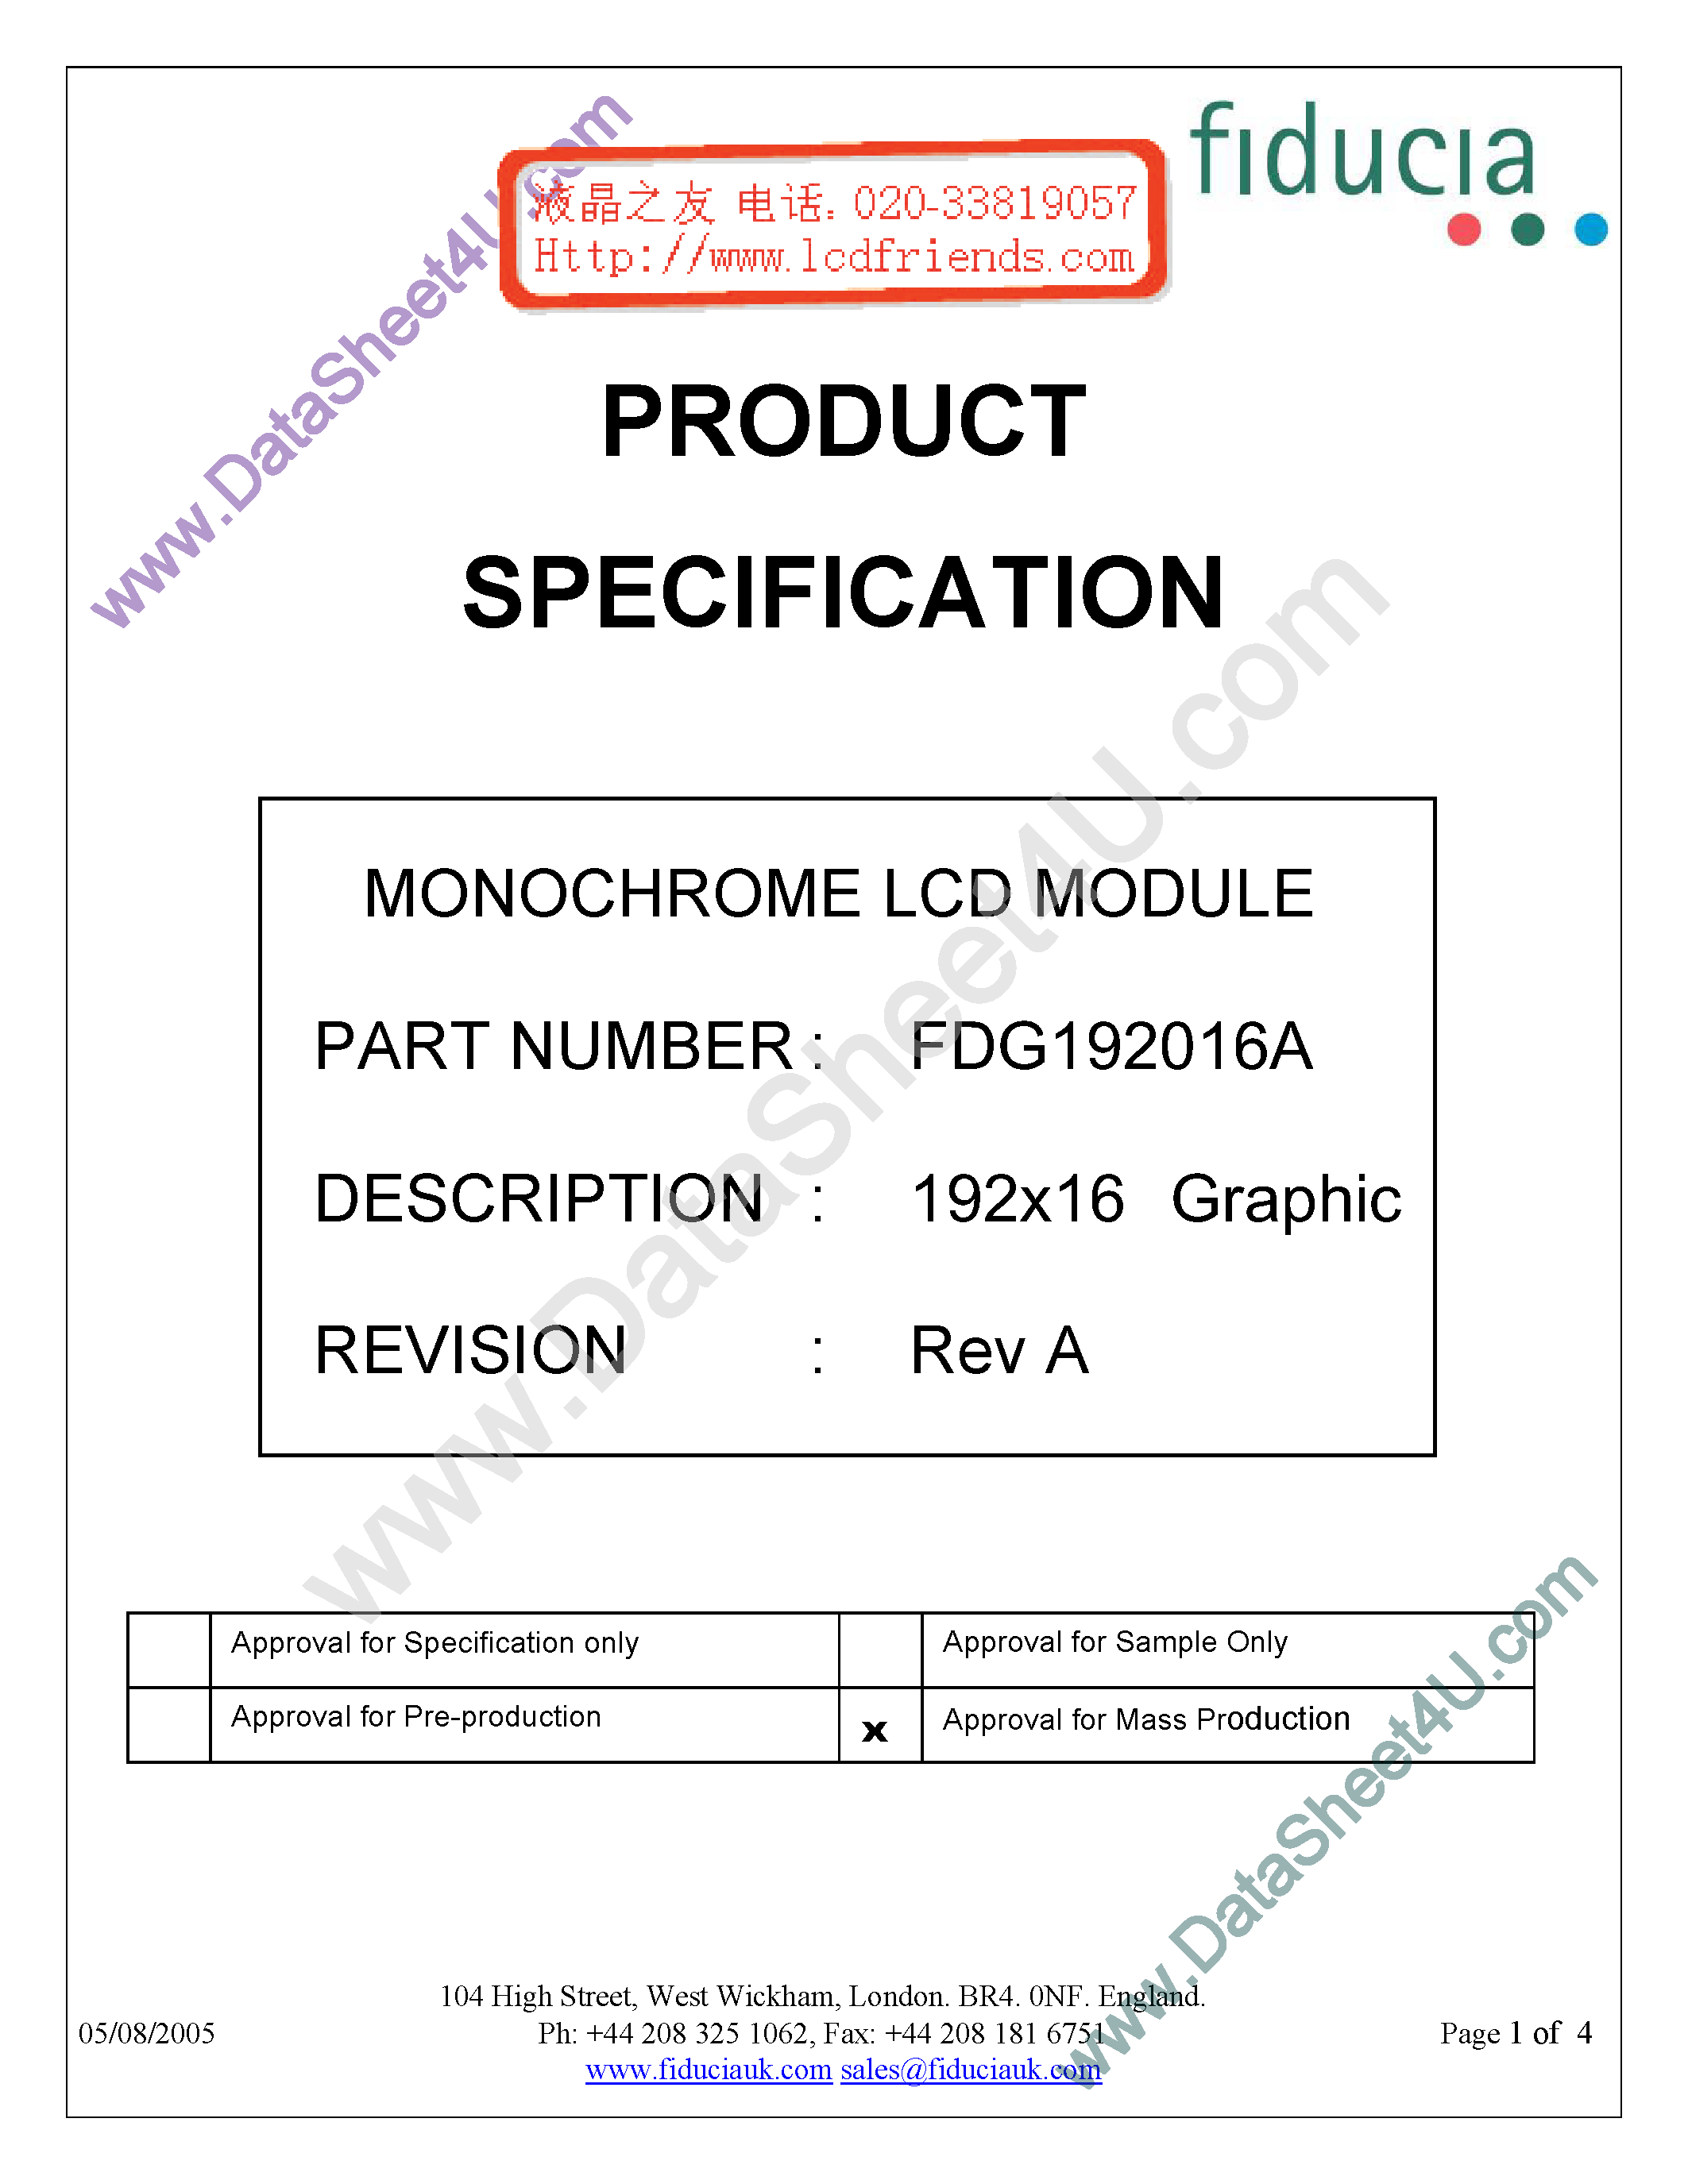 Даташит FDG192016A-Monochrome Lcd Module страница 1